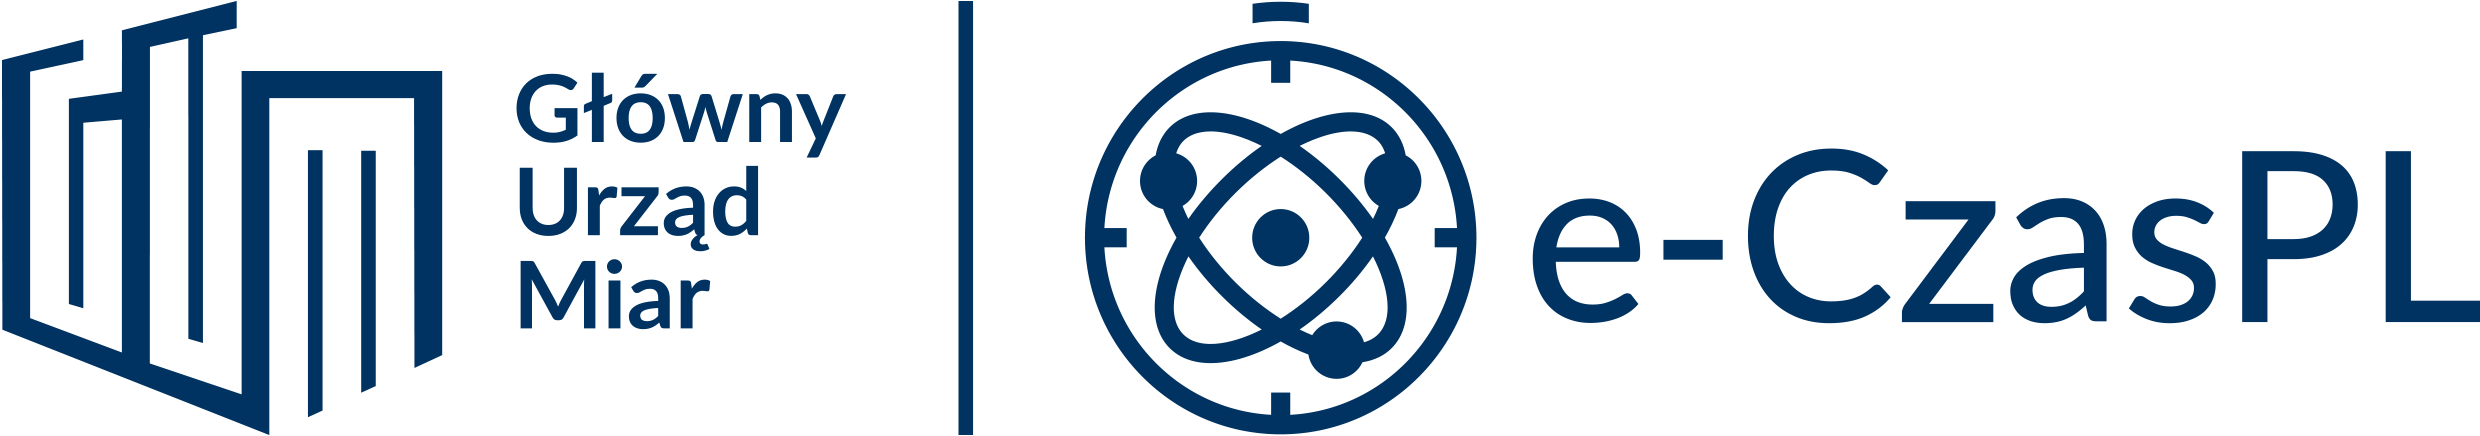 Logo e-Czas.pl - granatowe litery, w kółku spirala, z prawej strony logo GUM.